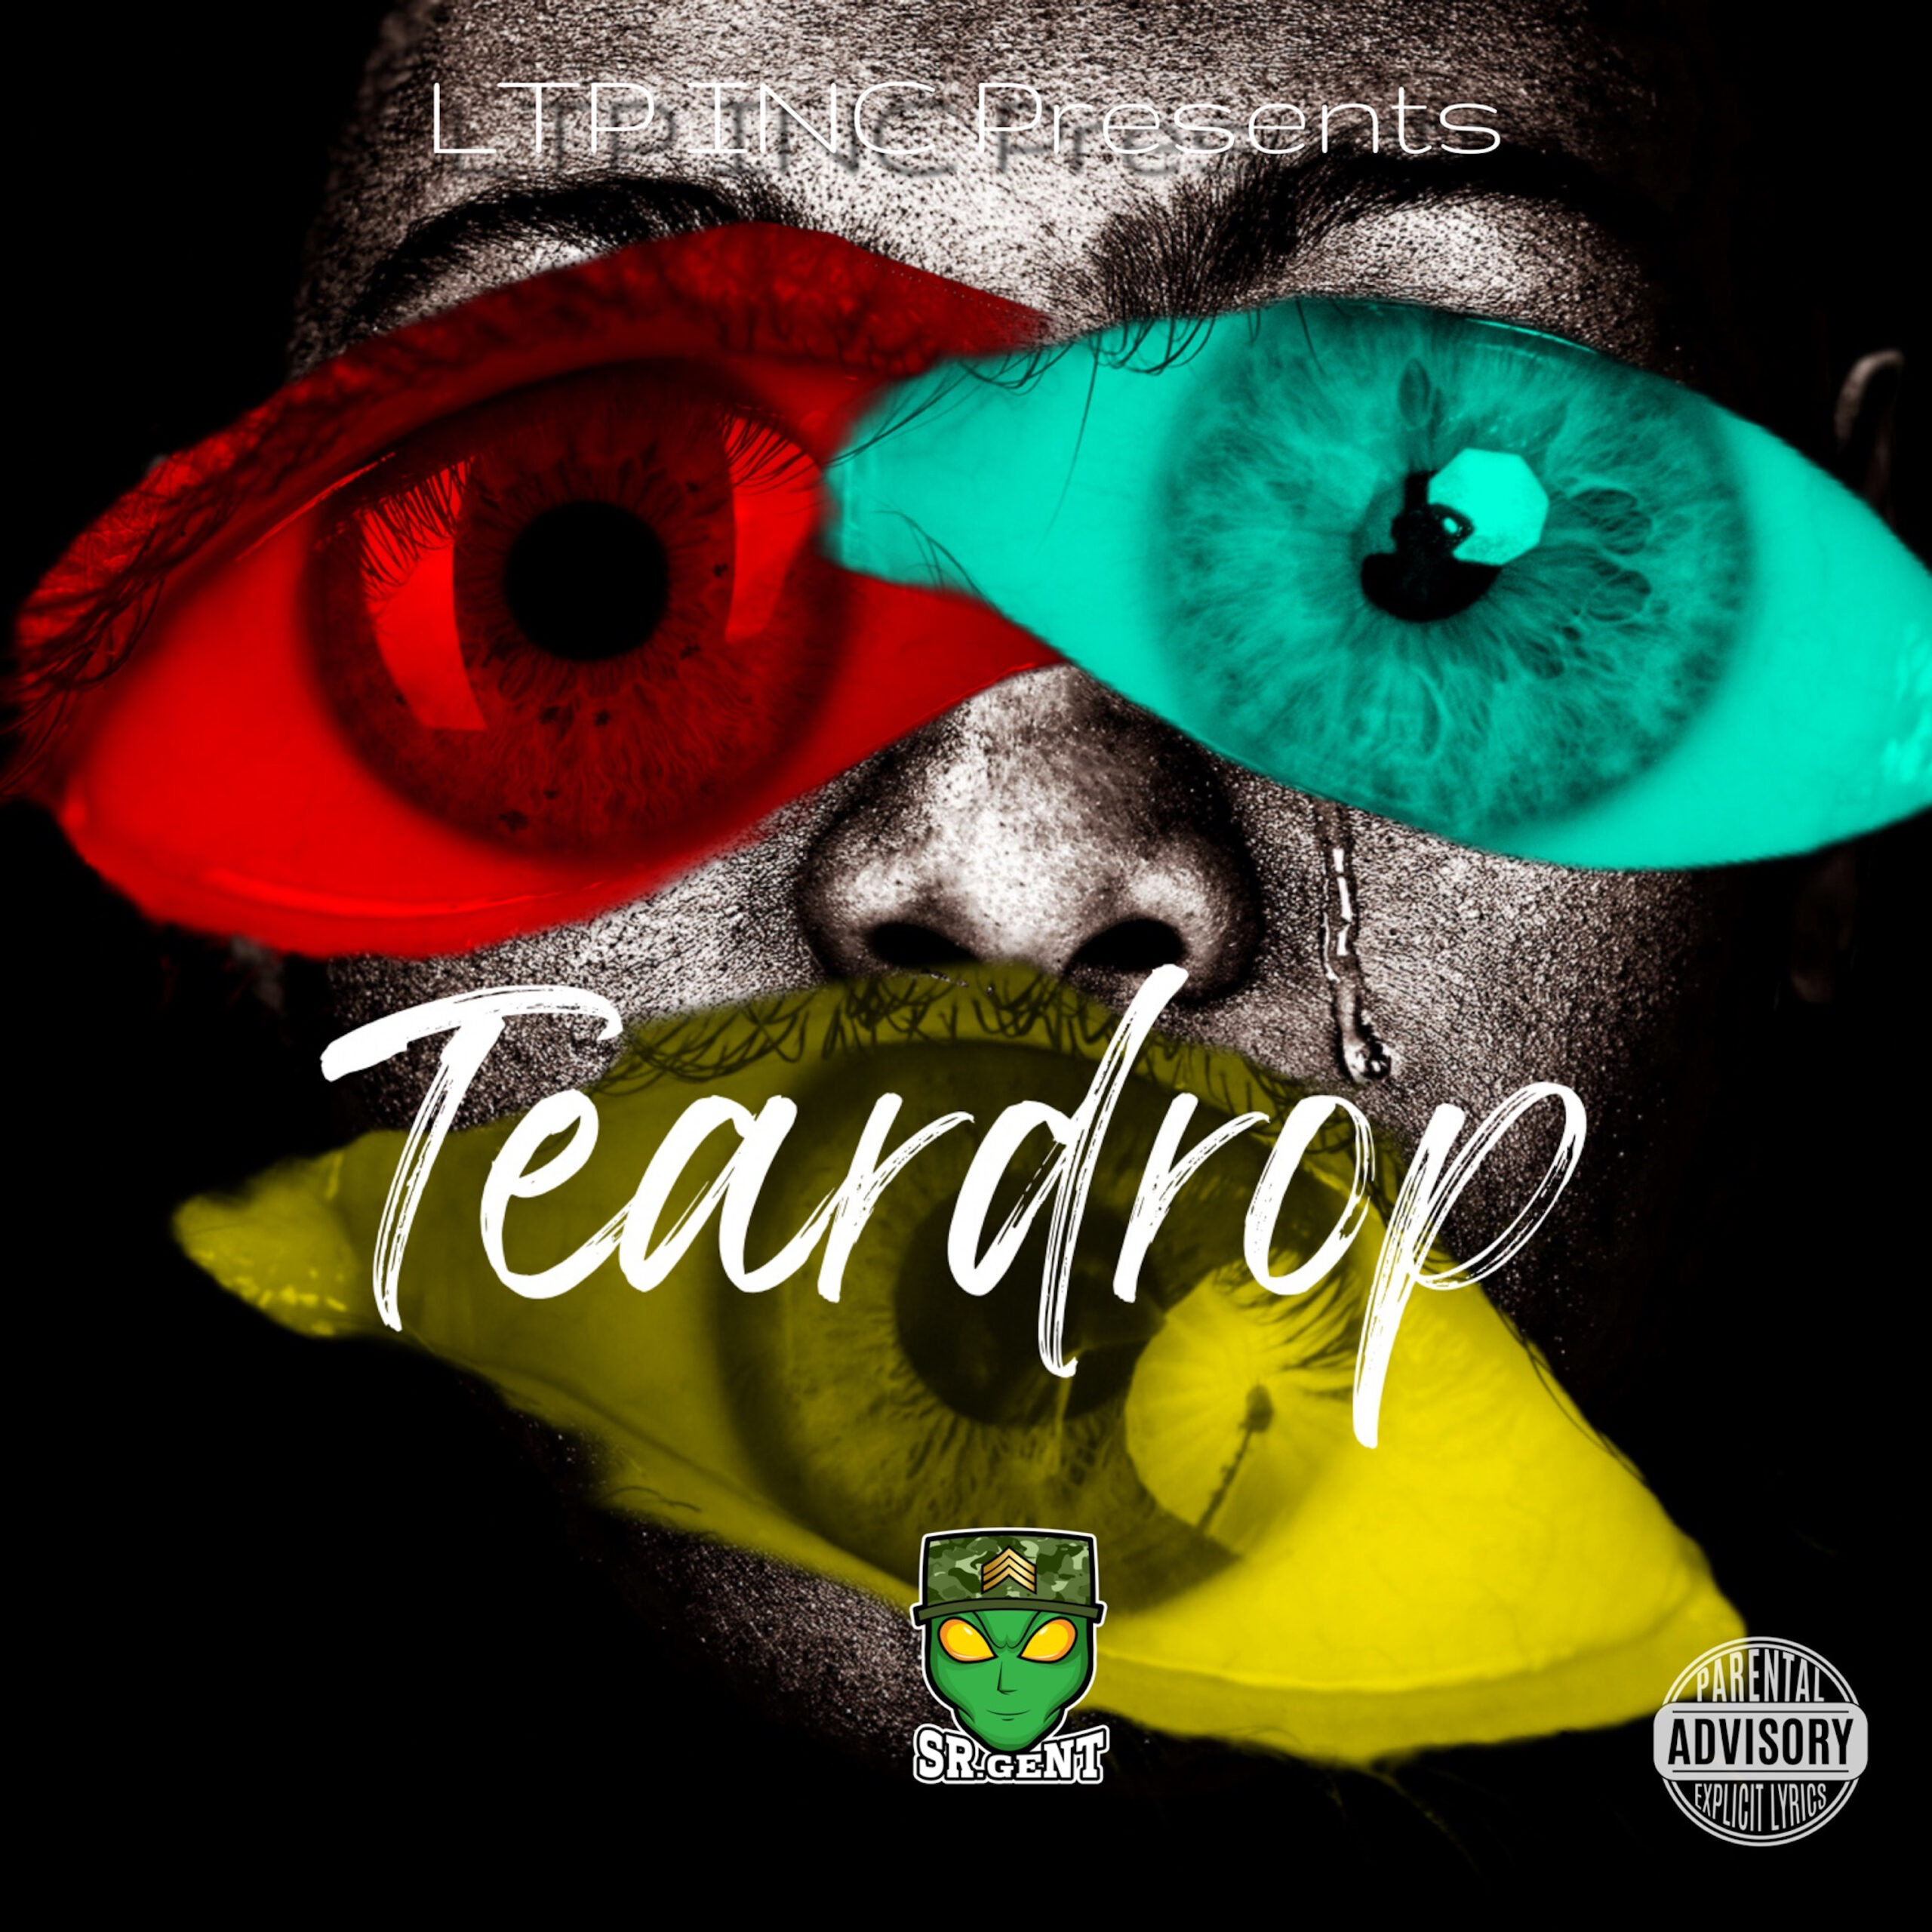 Teardrop cover art